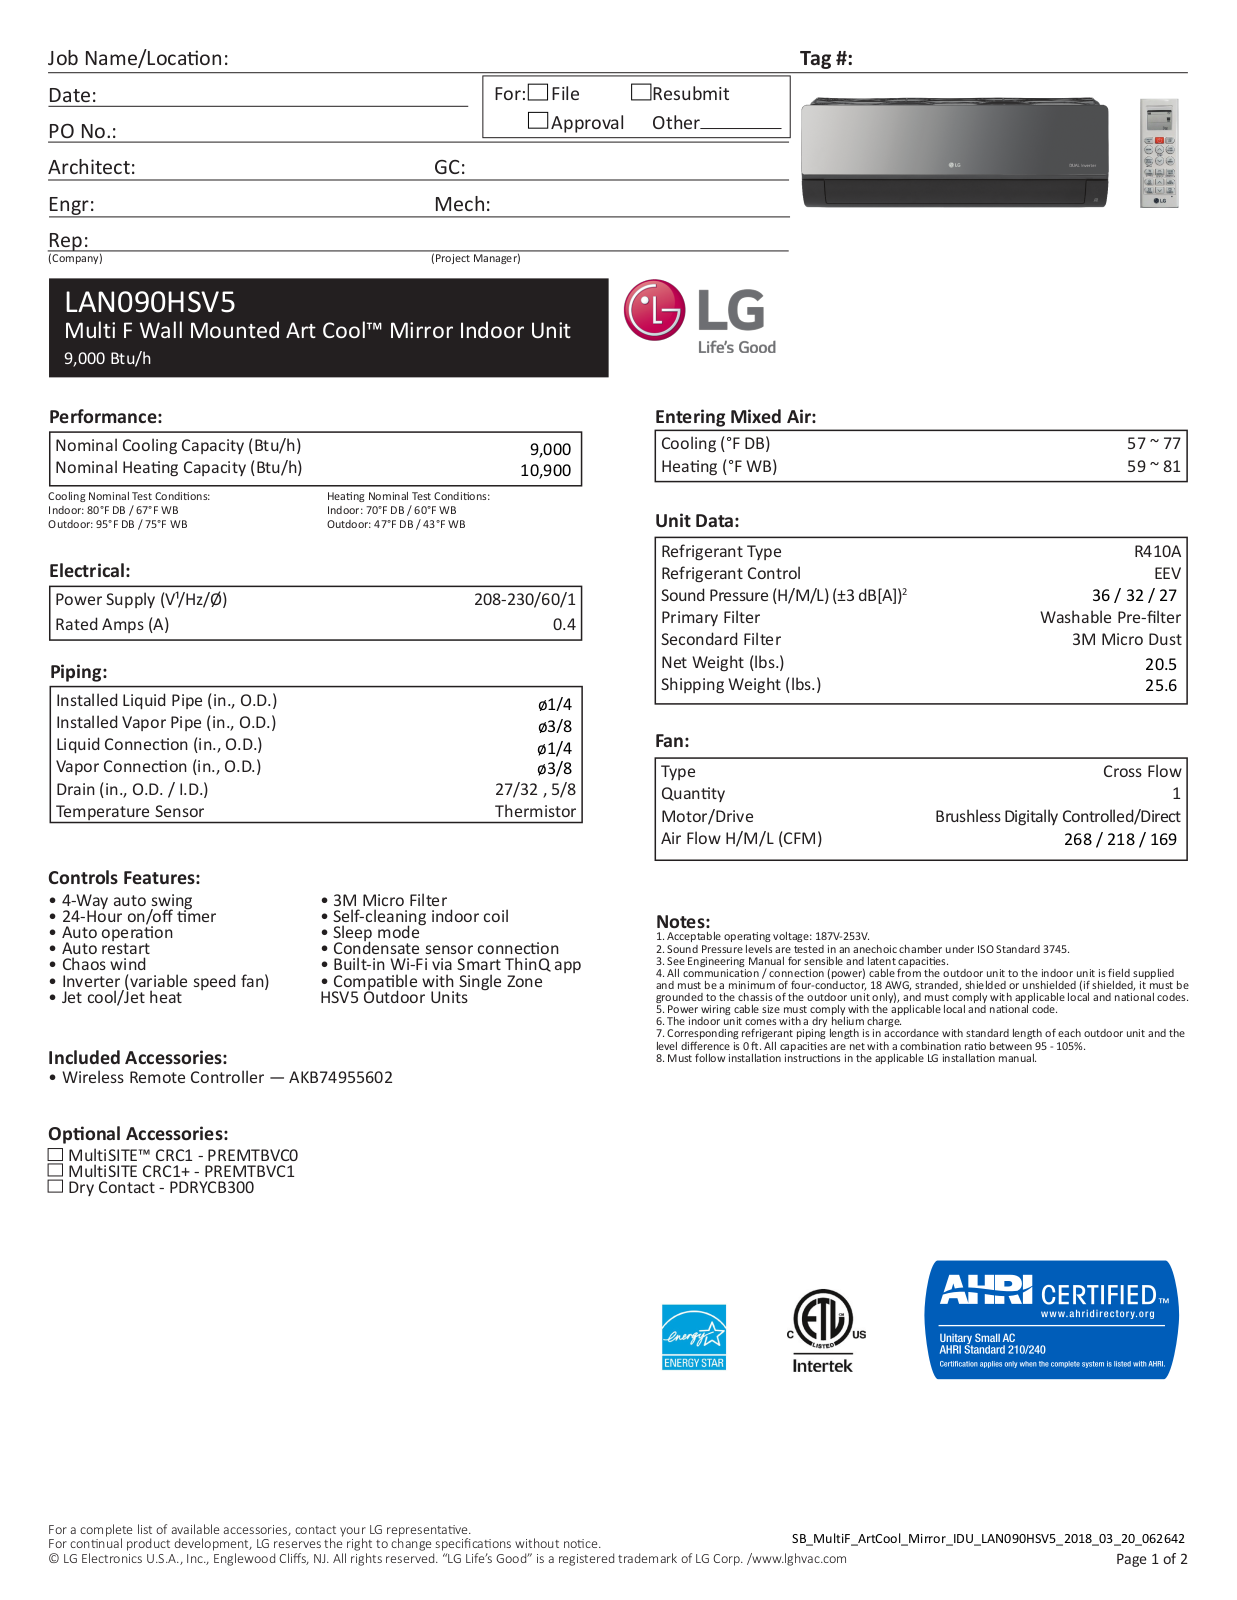 LG LAN090HSV5 User Manual